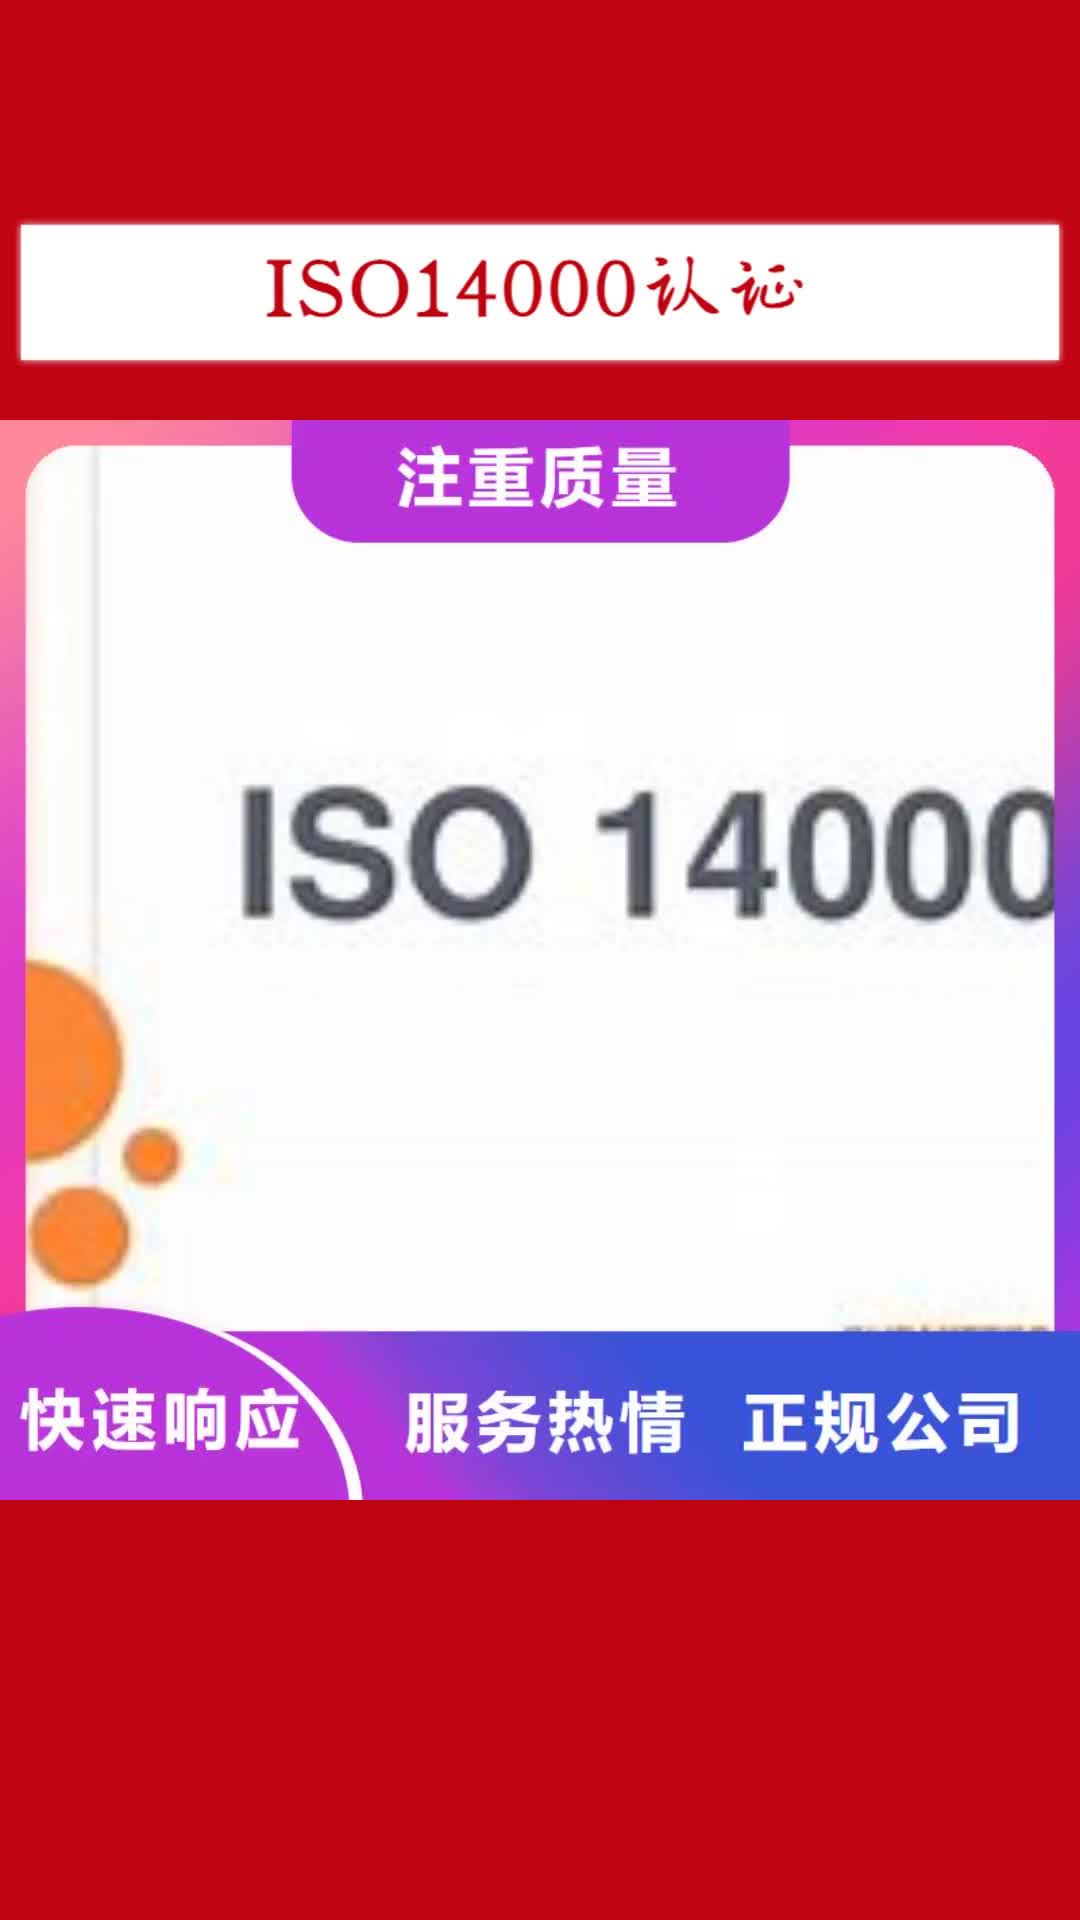 三明【ISO14000认证】-知识产权认证/GB29490高效